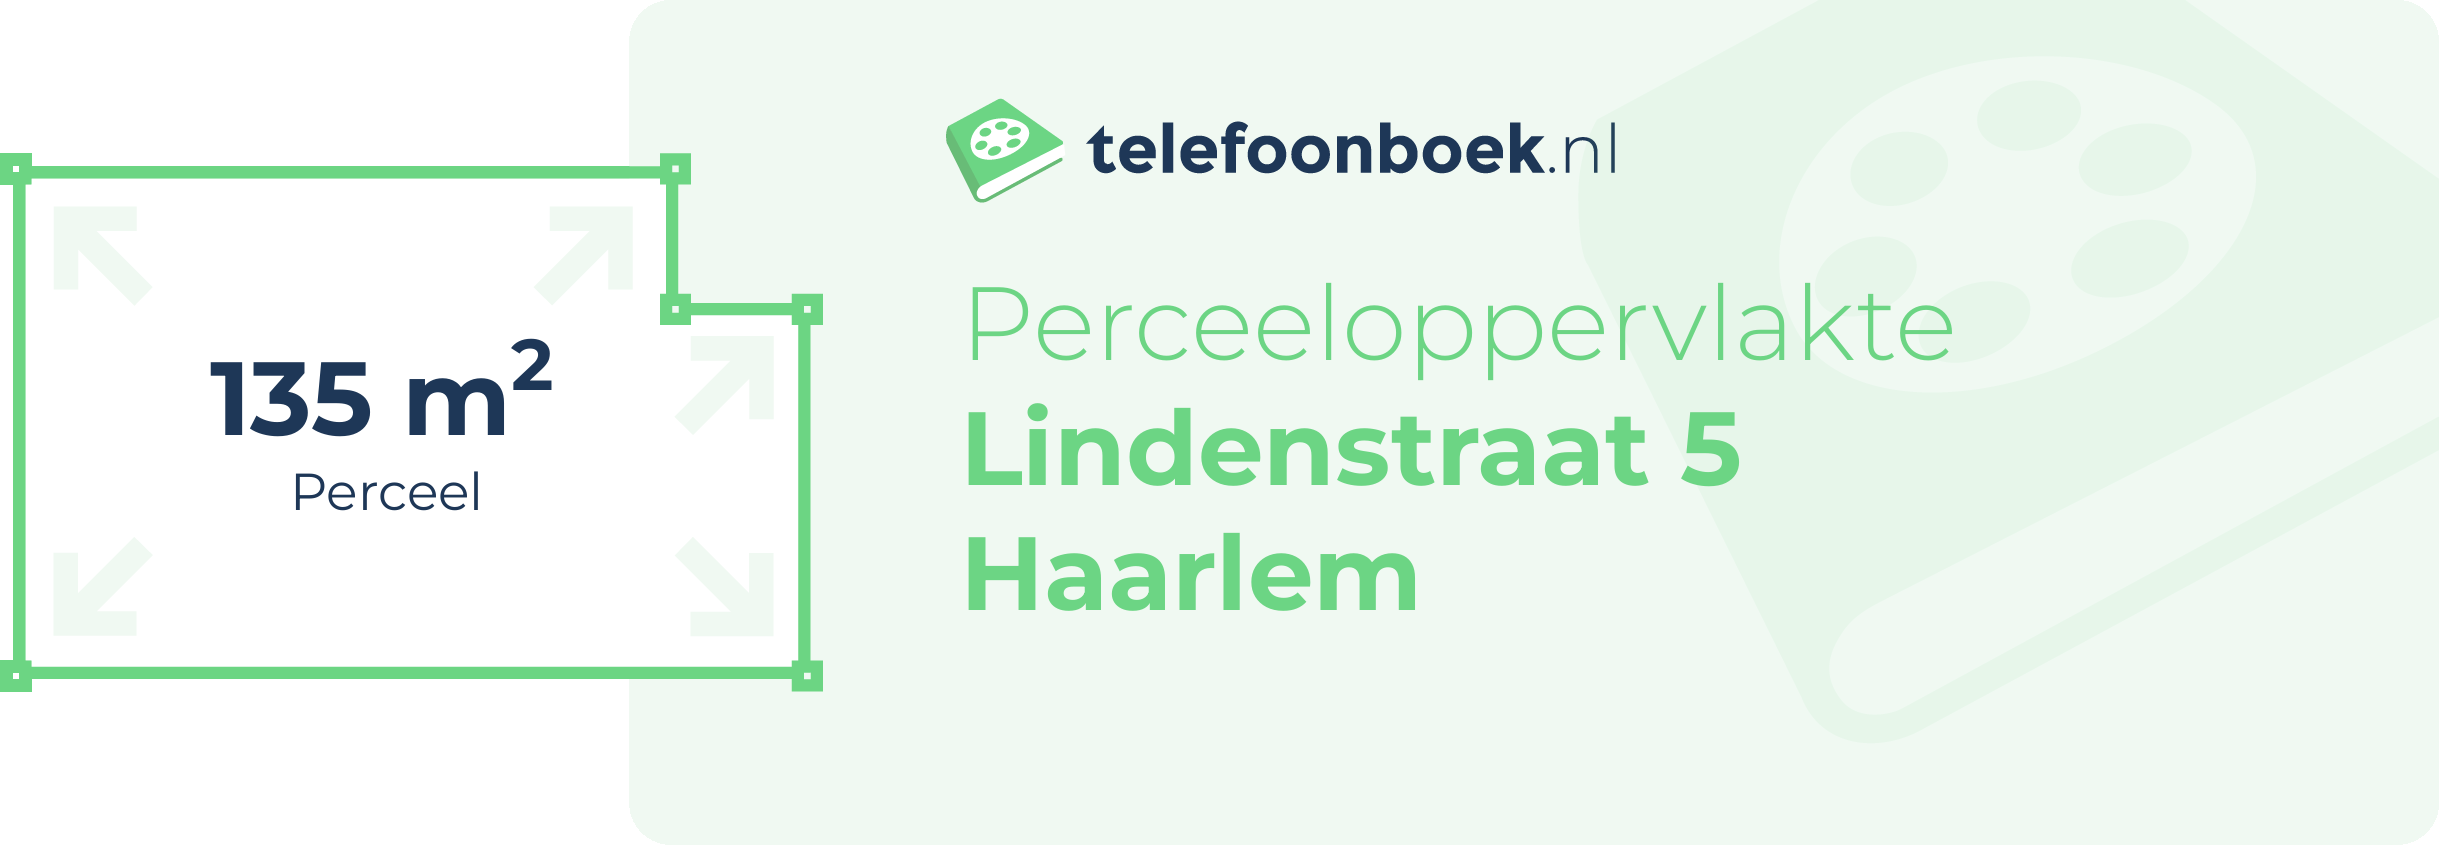 Perceeloppervlakte Lindenstraat 5 Haarlem